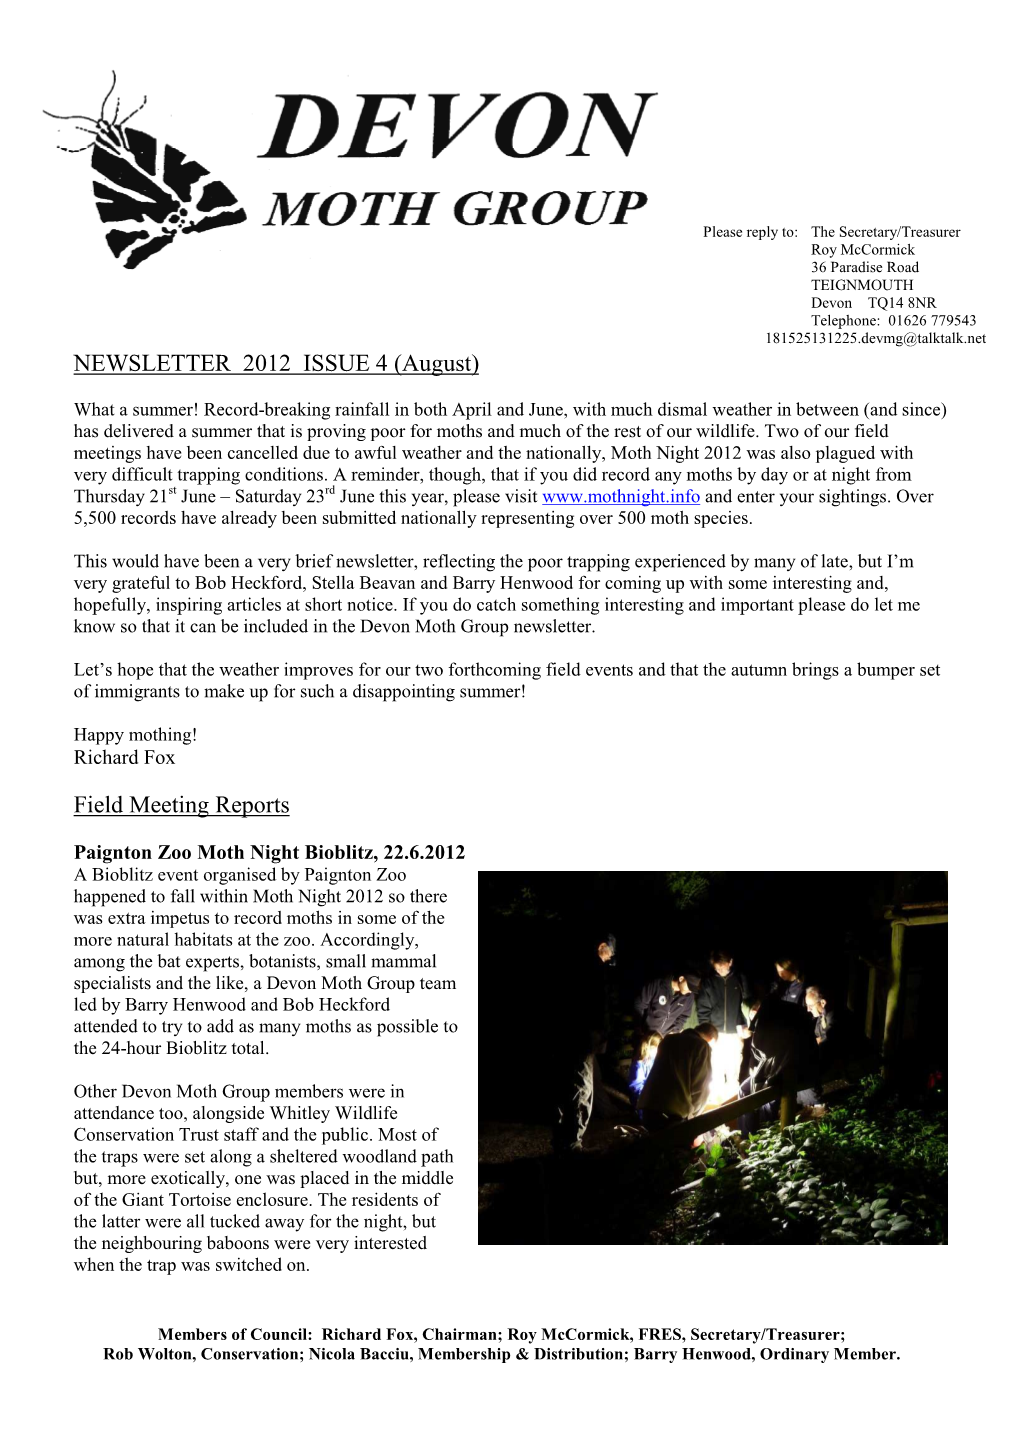 DMG Newsletter 2012 Issue 4